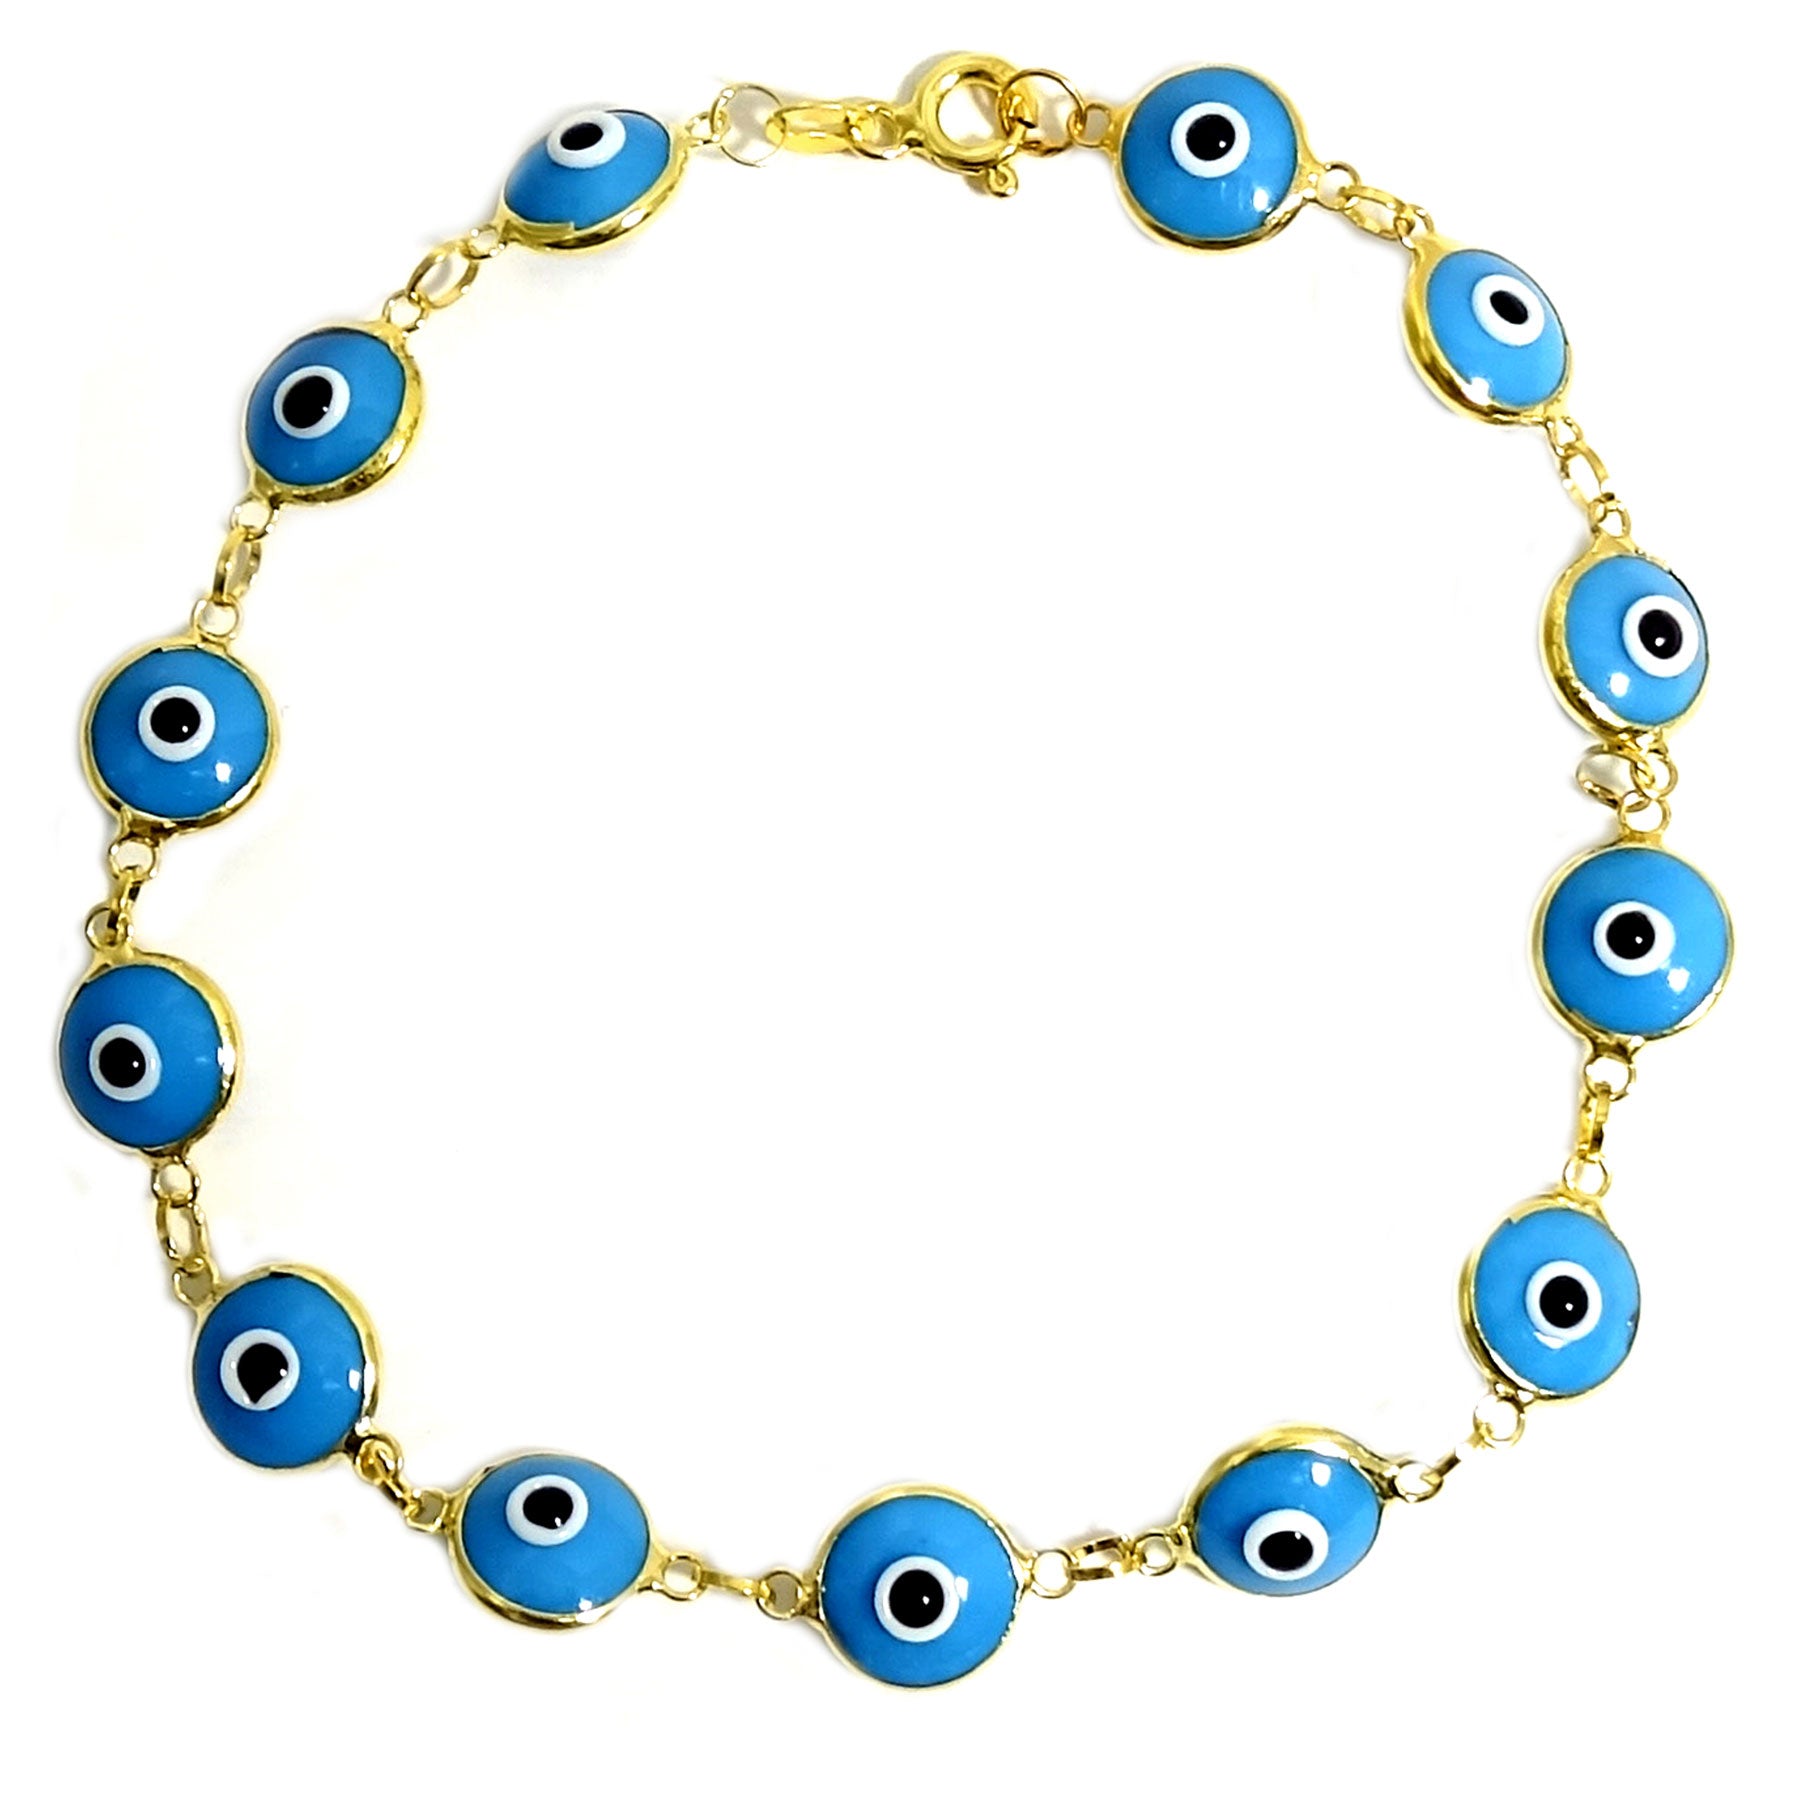 Buy Feng Shui Evil Eye Bracelet for Protection from Evil eye